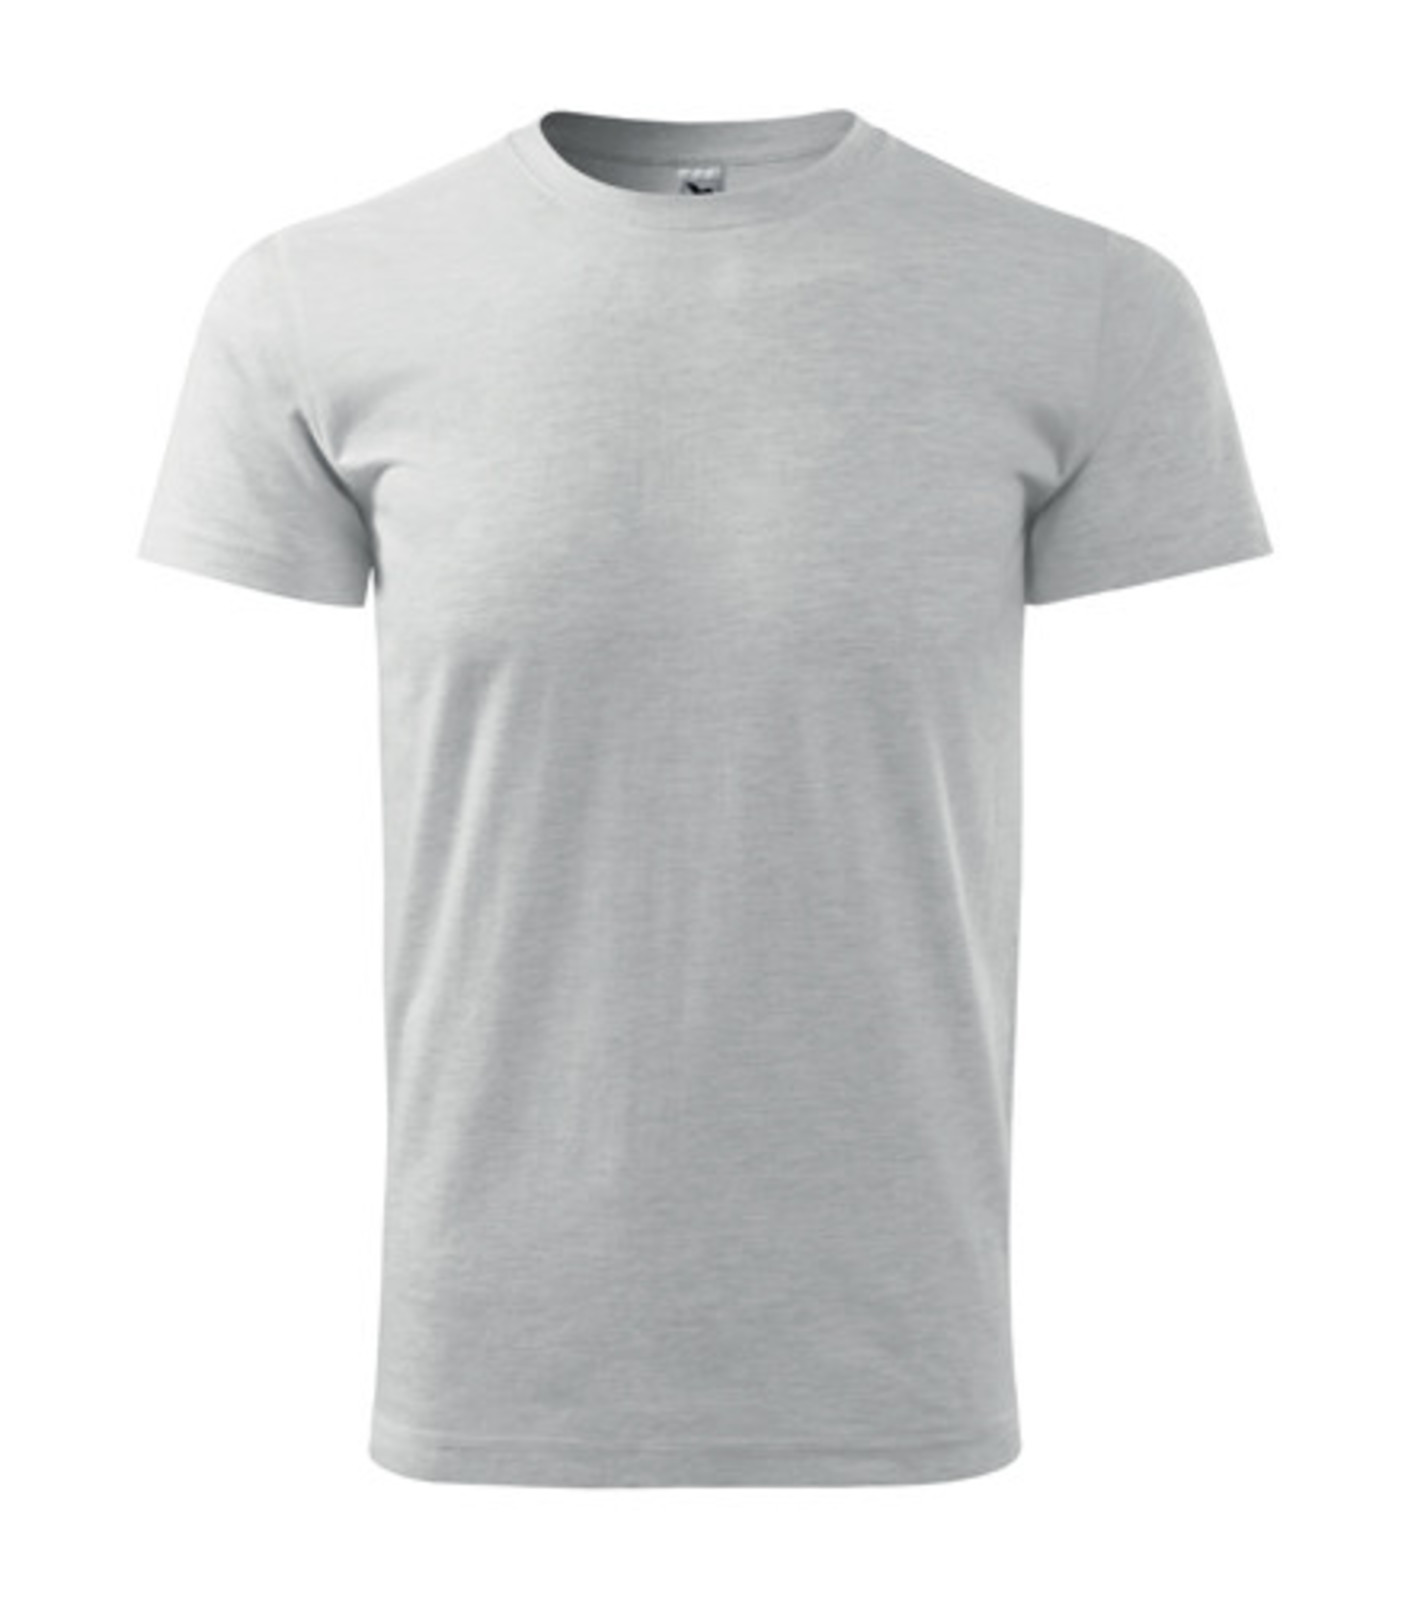 Pánske tričko Malfini Basic 129 - veľkosť: M, farba: svetlosivý melír